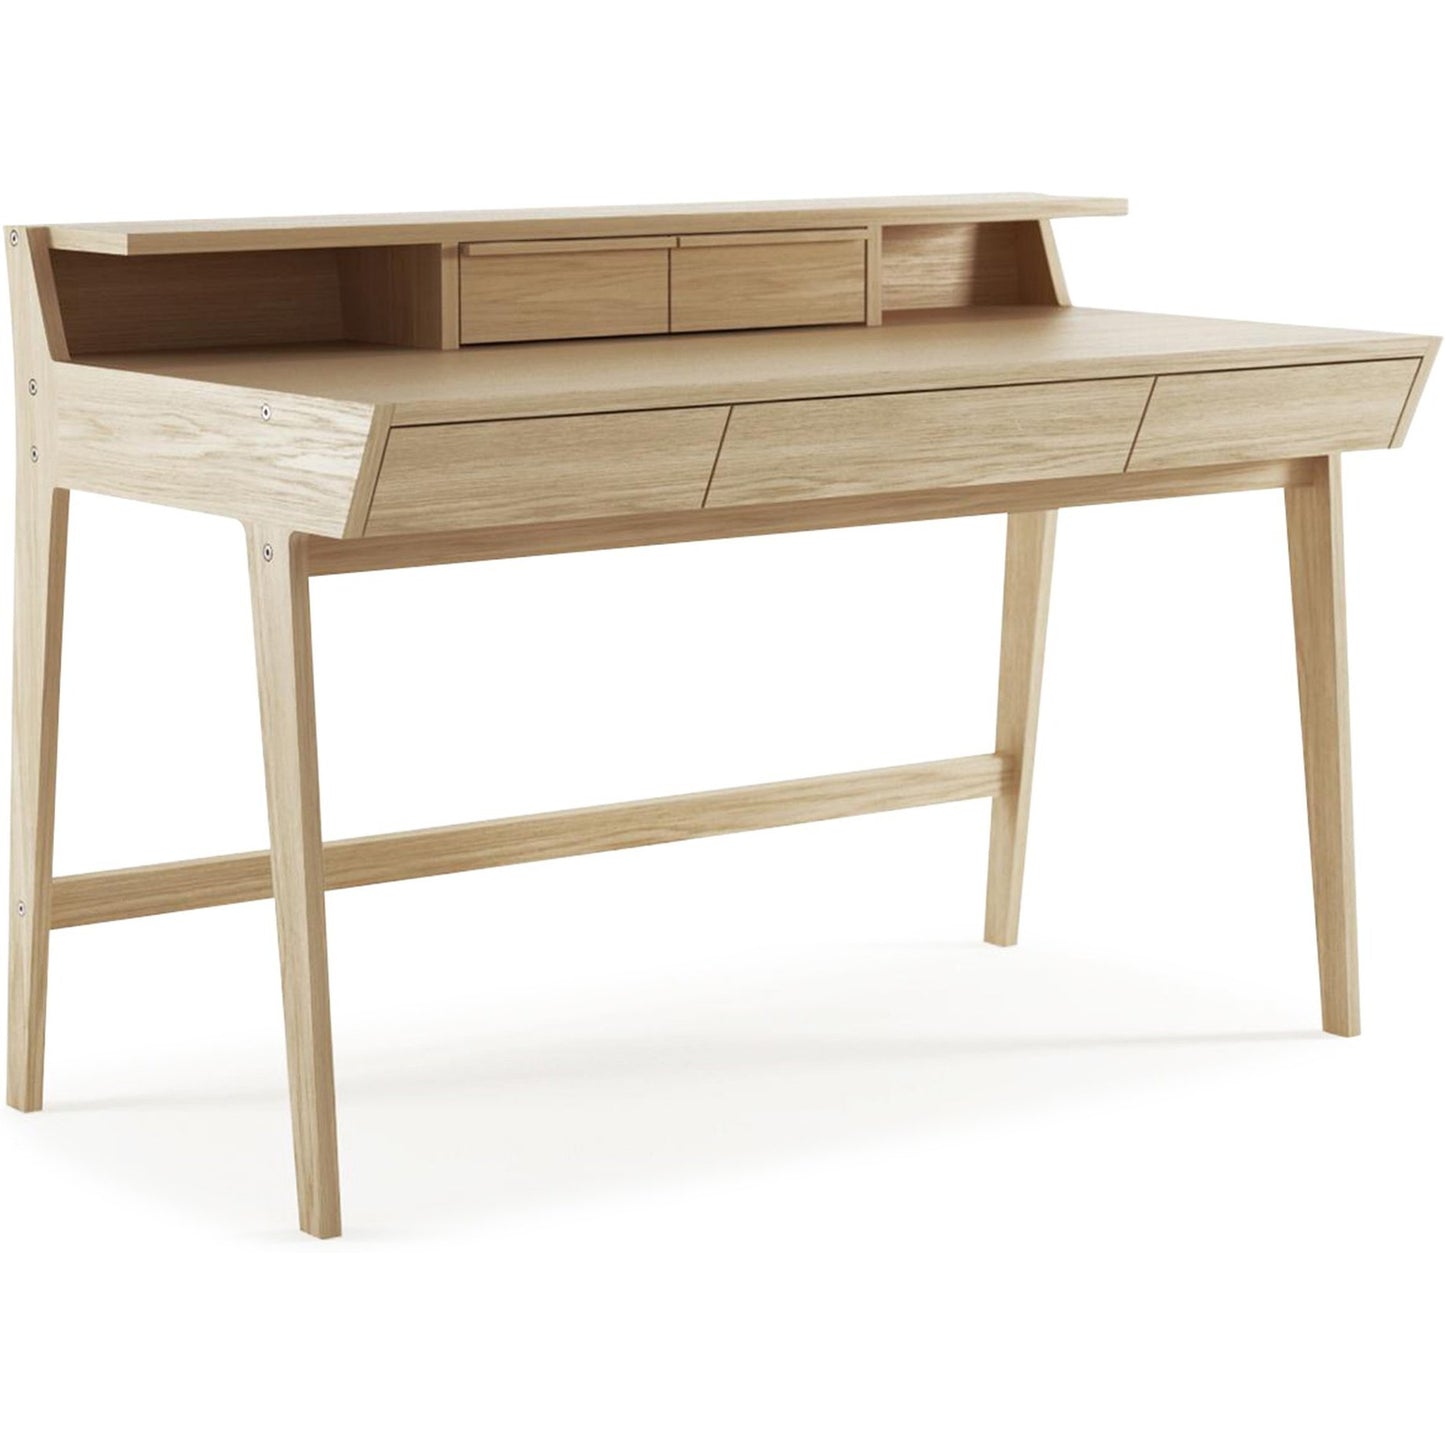 Soho Study Desk - Home office desk in solid European Oak Timber-Indoor Furniture-Karpenter-Neutral Oak Wood-European Oak-Natural Oil-based-SLH AU